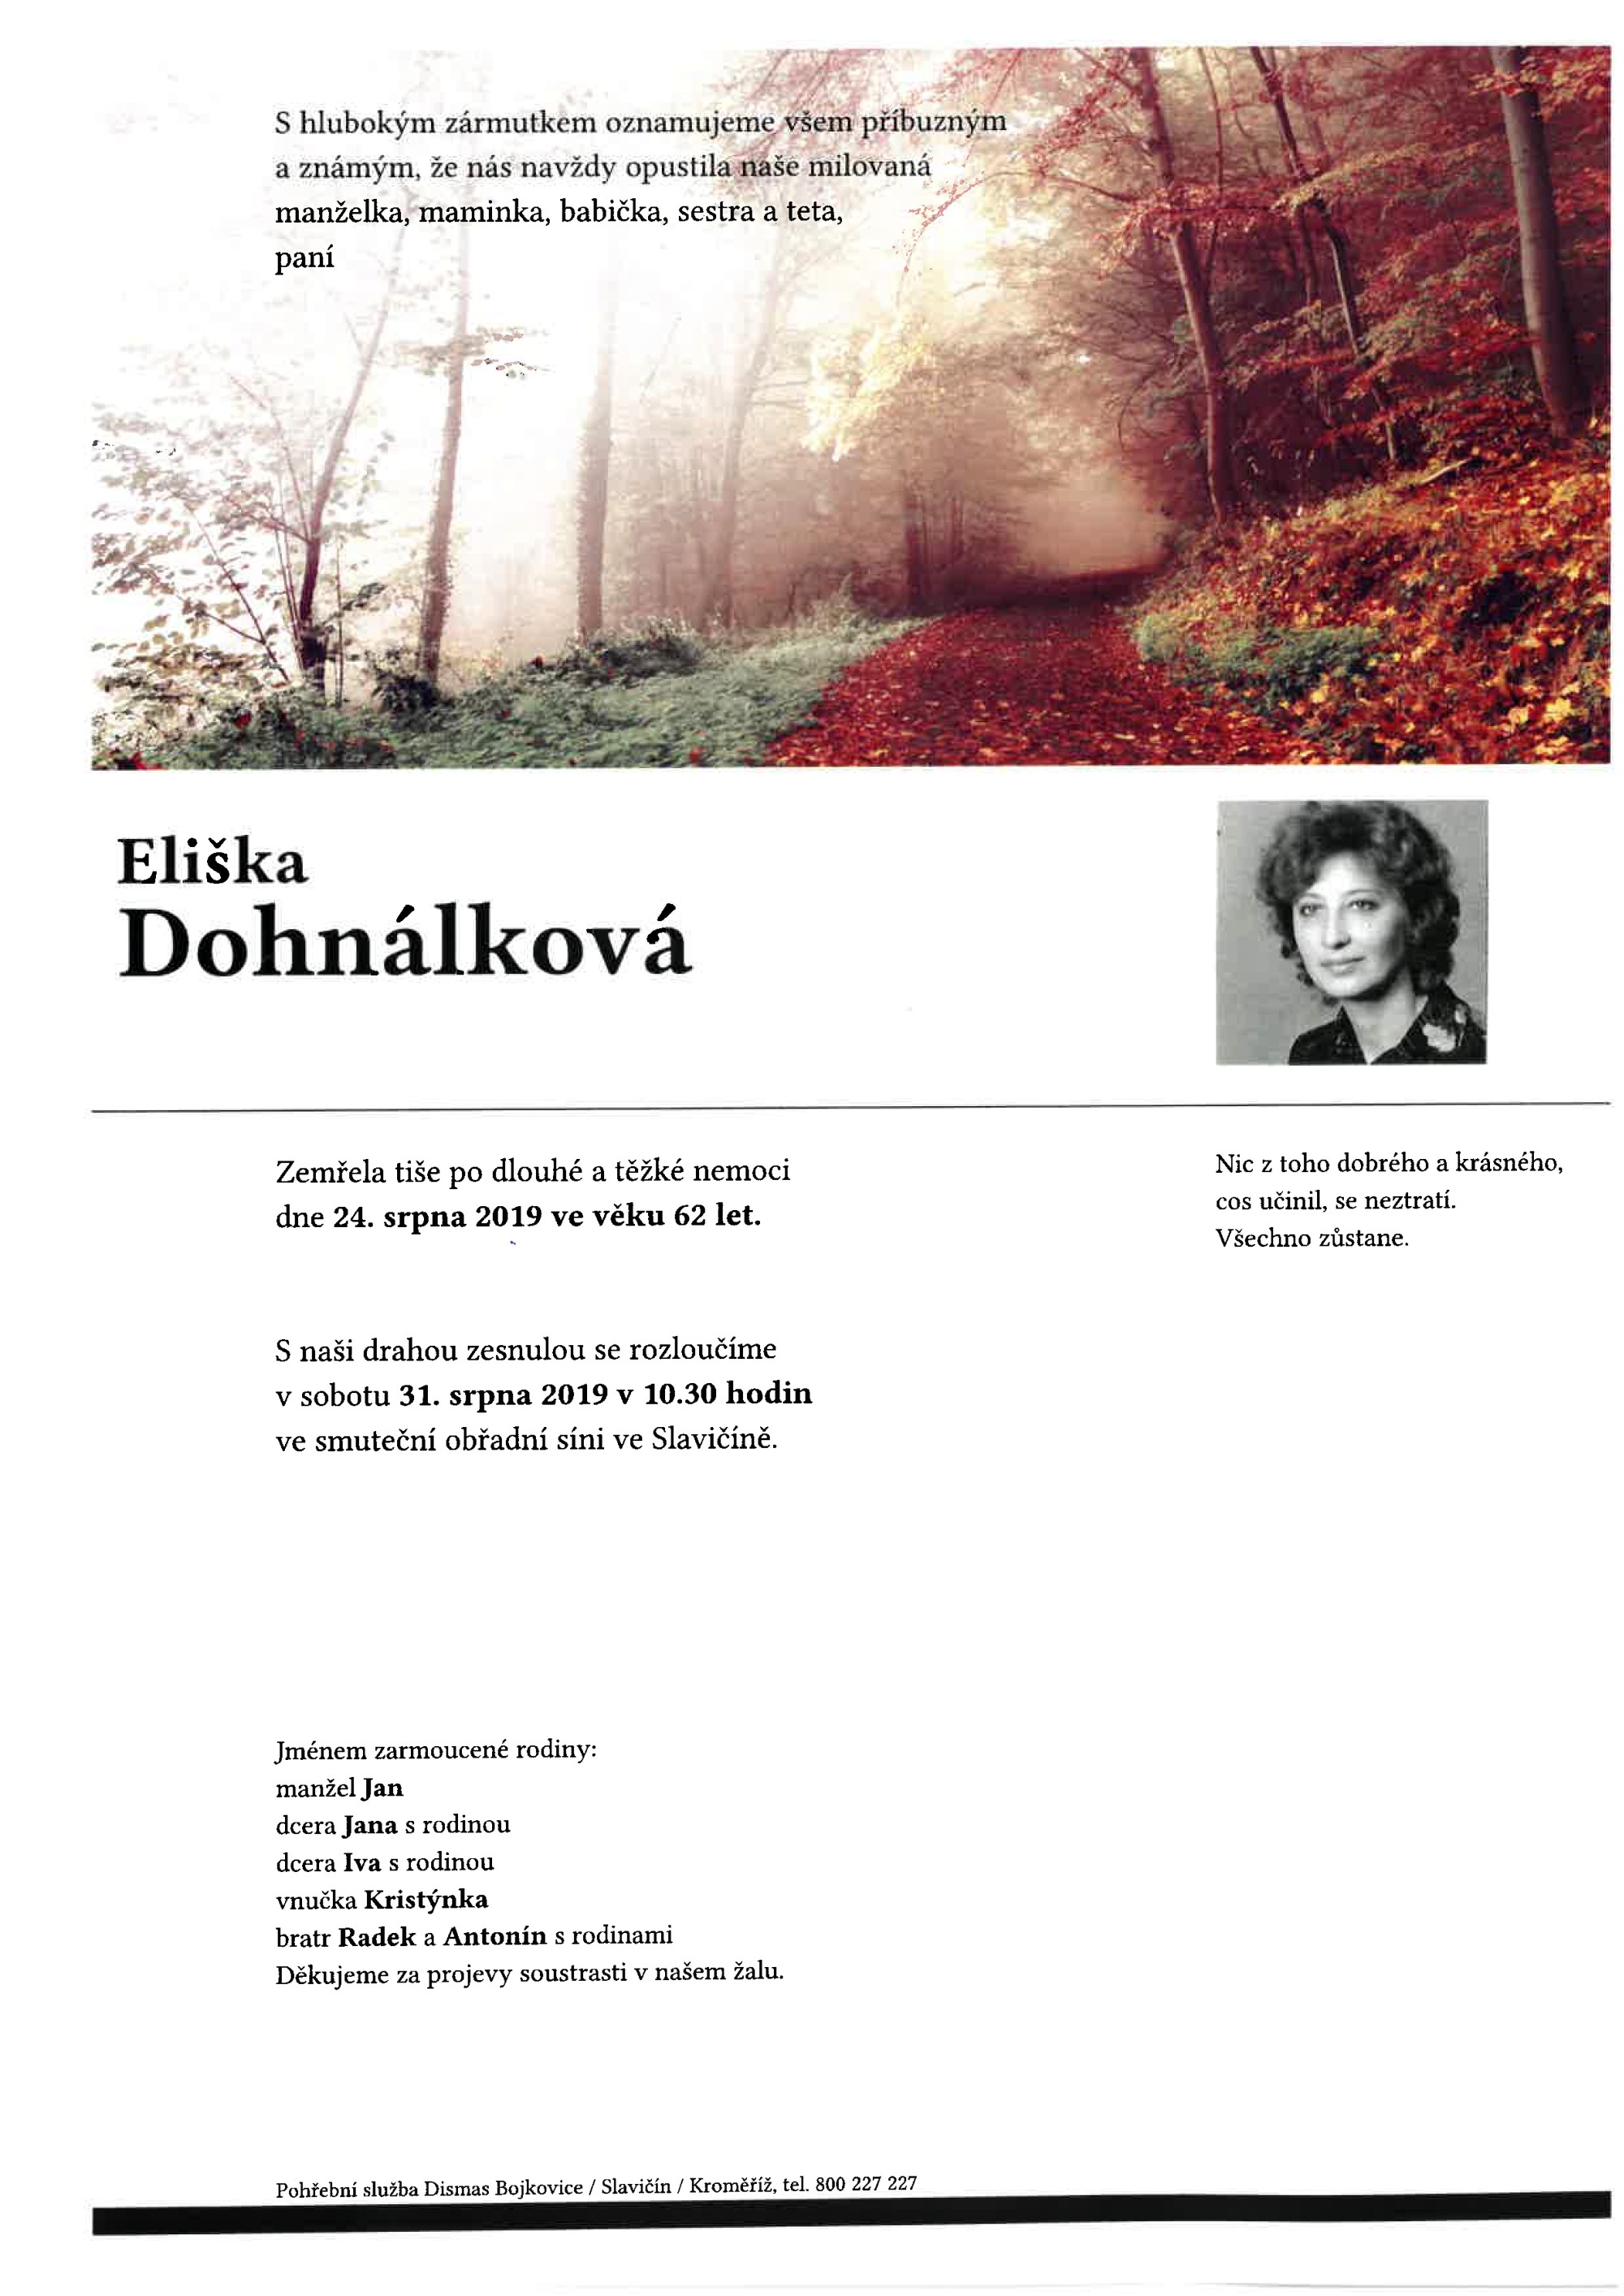 Eliška Dohnálková